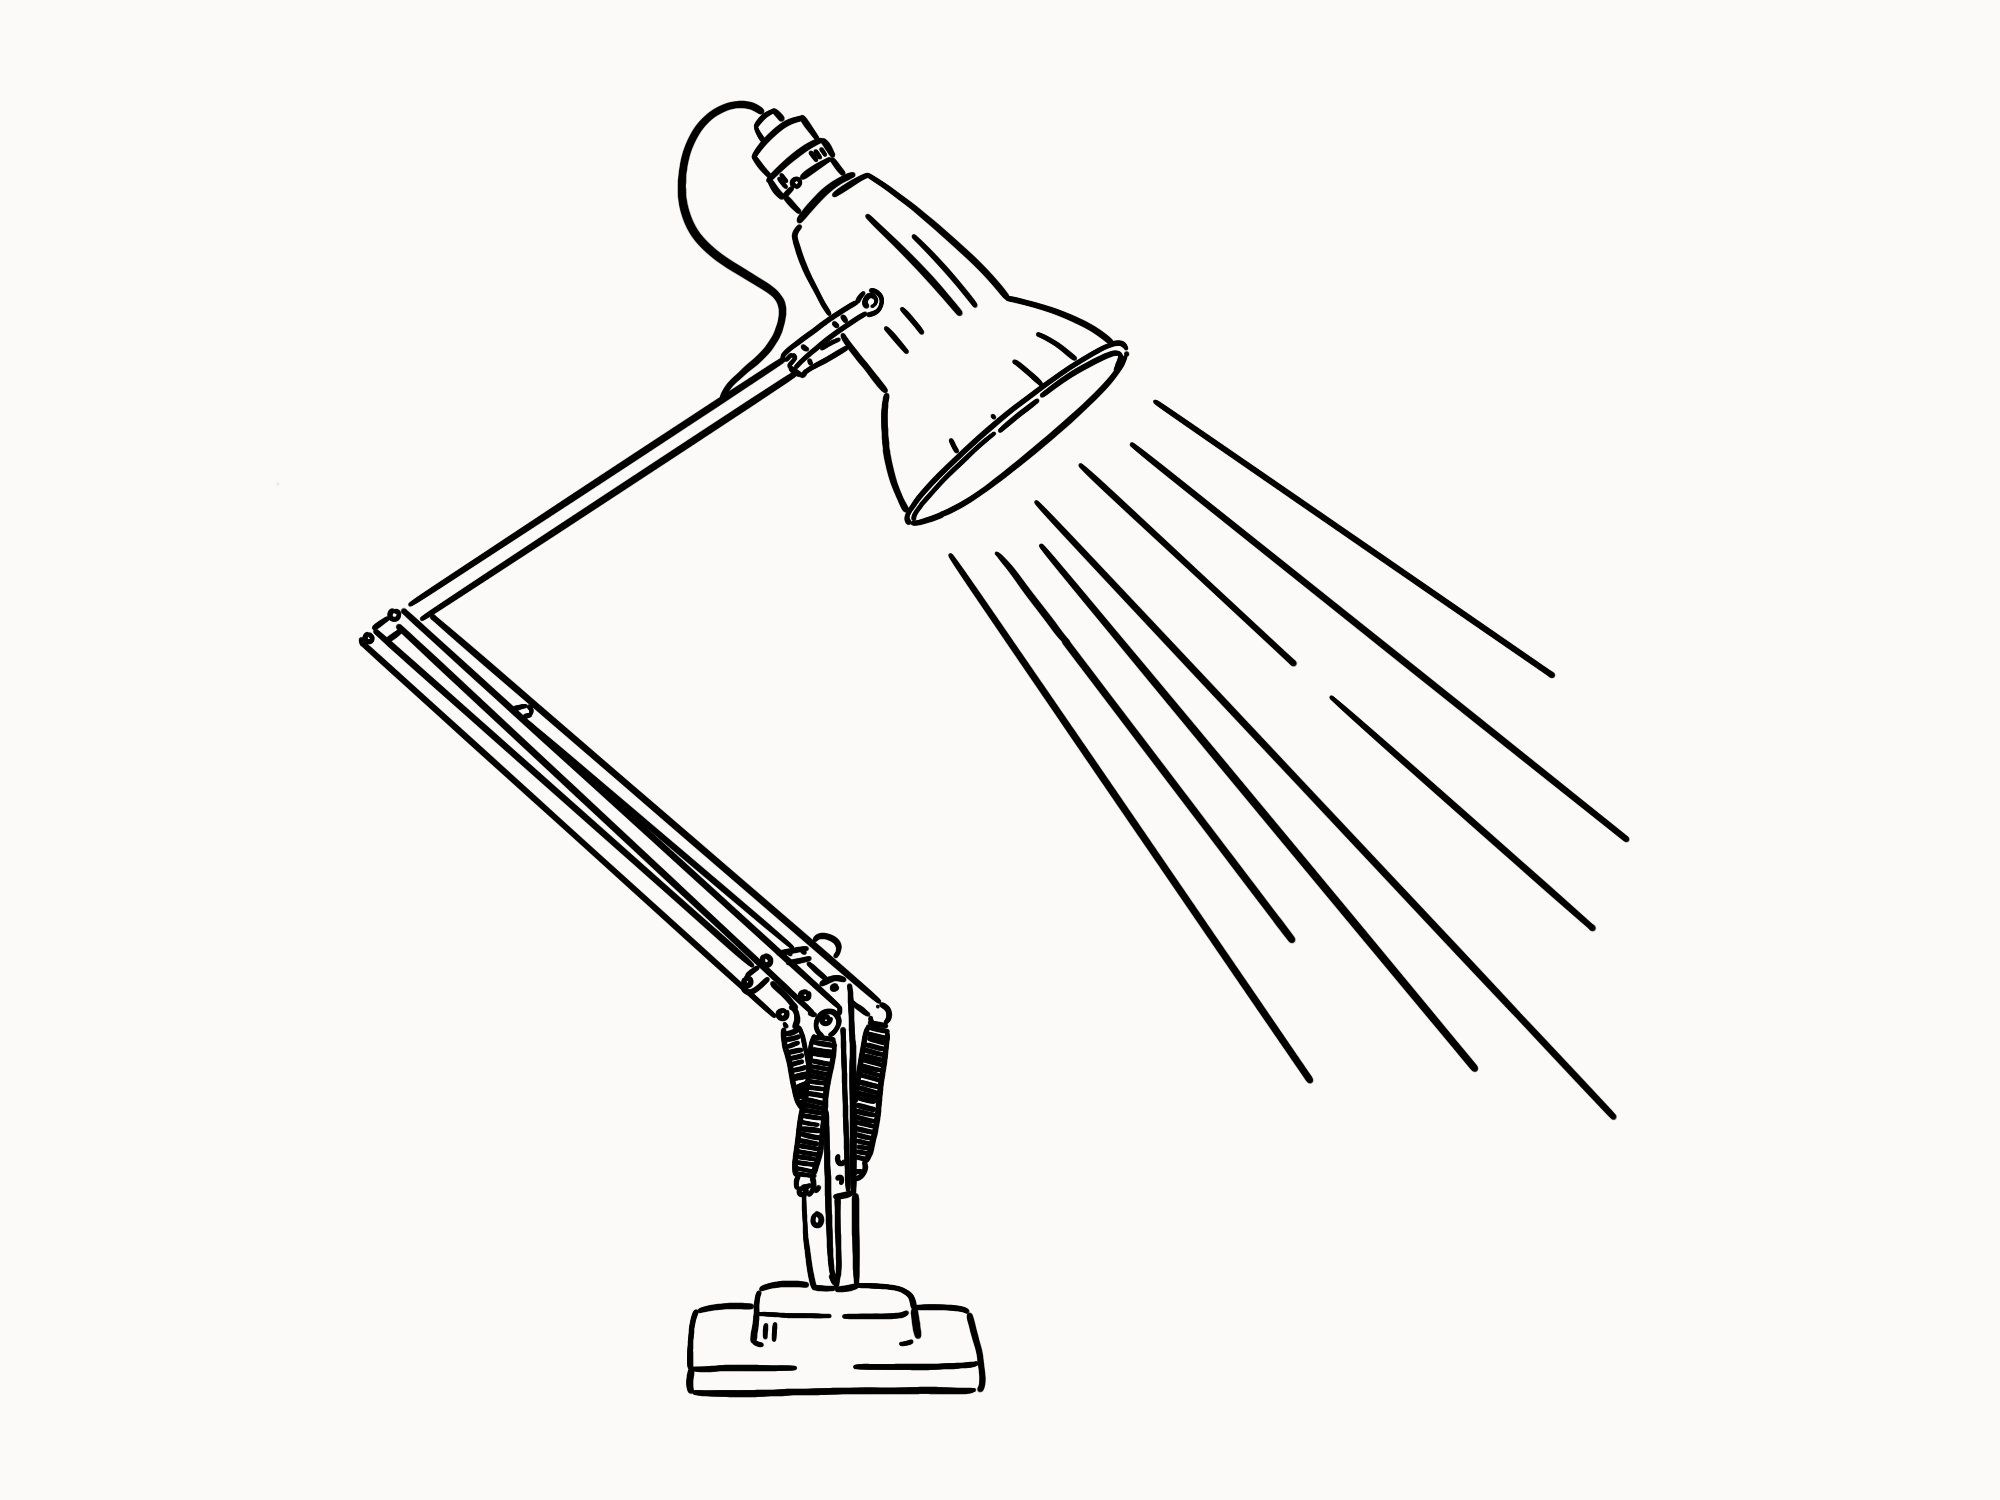 Anglepoise Lamp design illustration